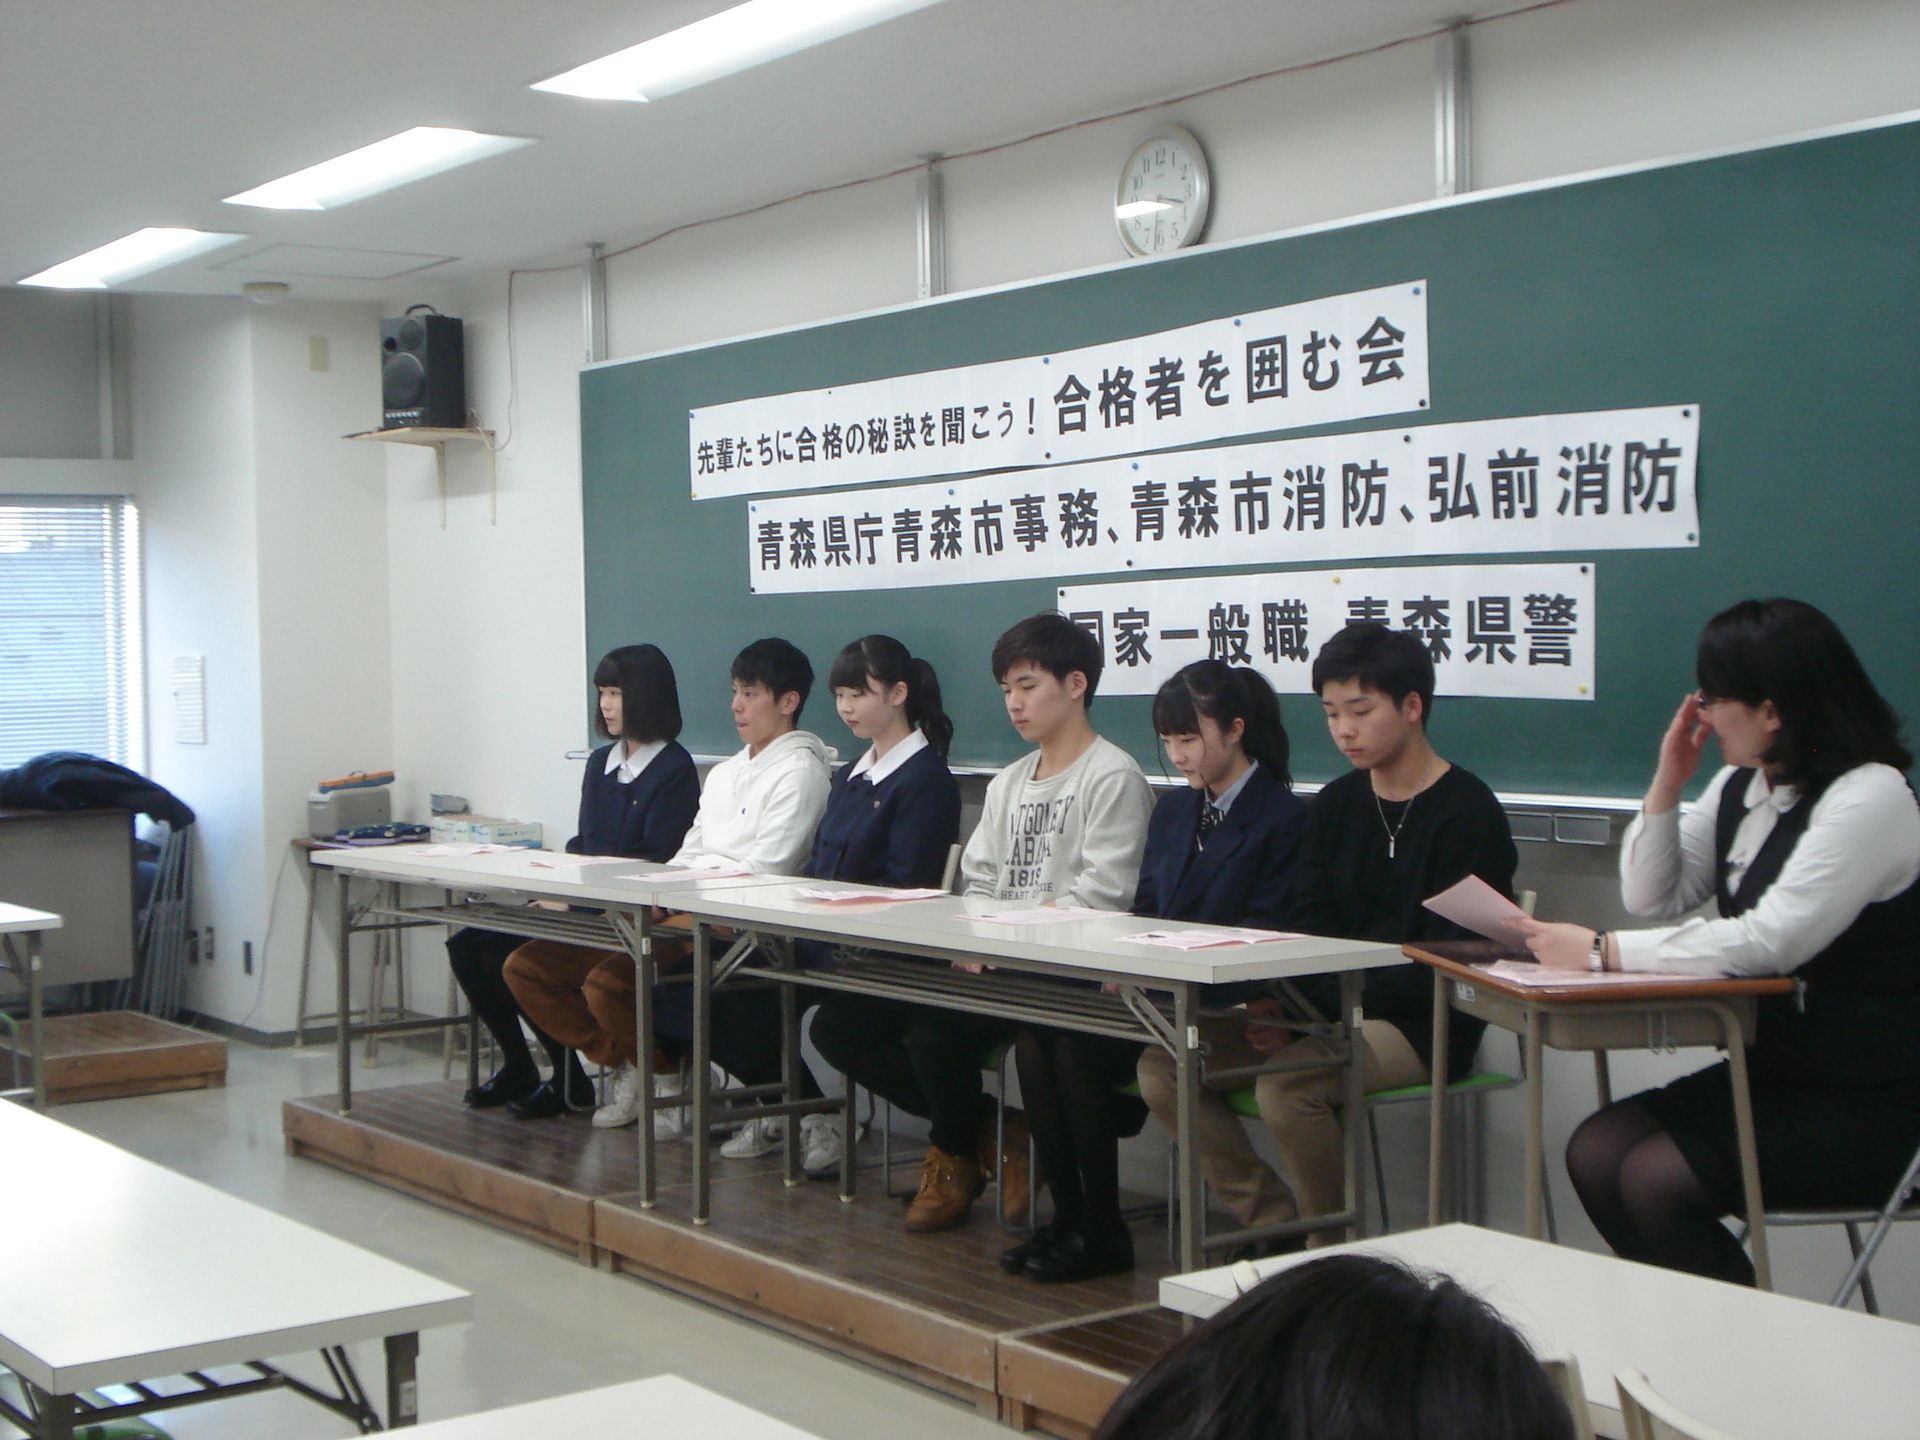 高卒程度公務員試験 合格者を囲む会を実施しました 東京アカデミー青森校 公務員 教員 各種国家試験対策 のブログ